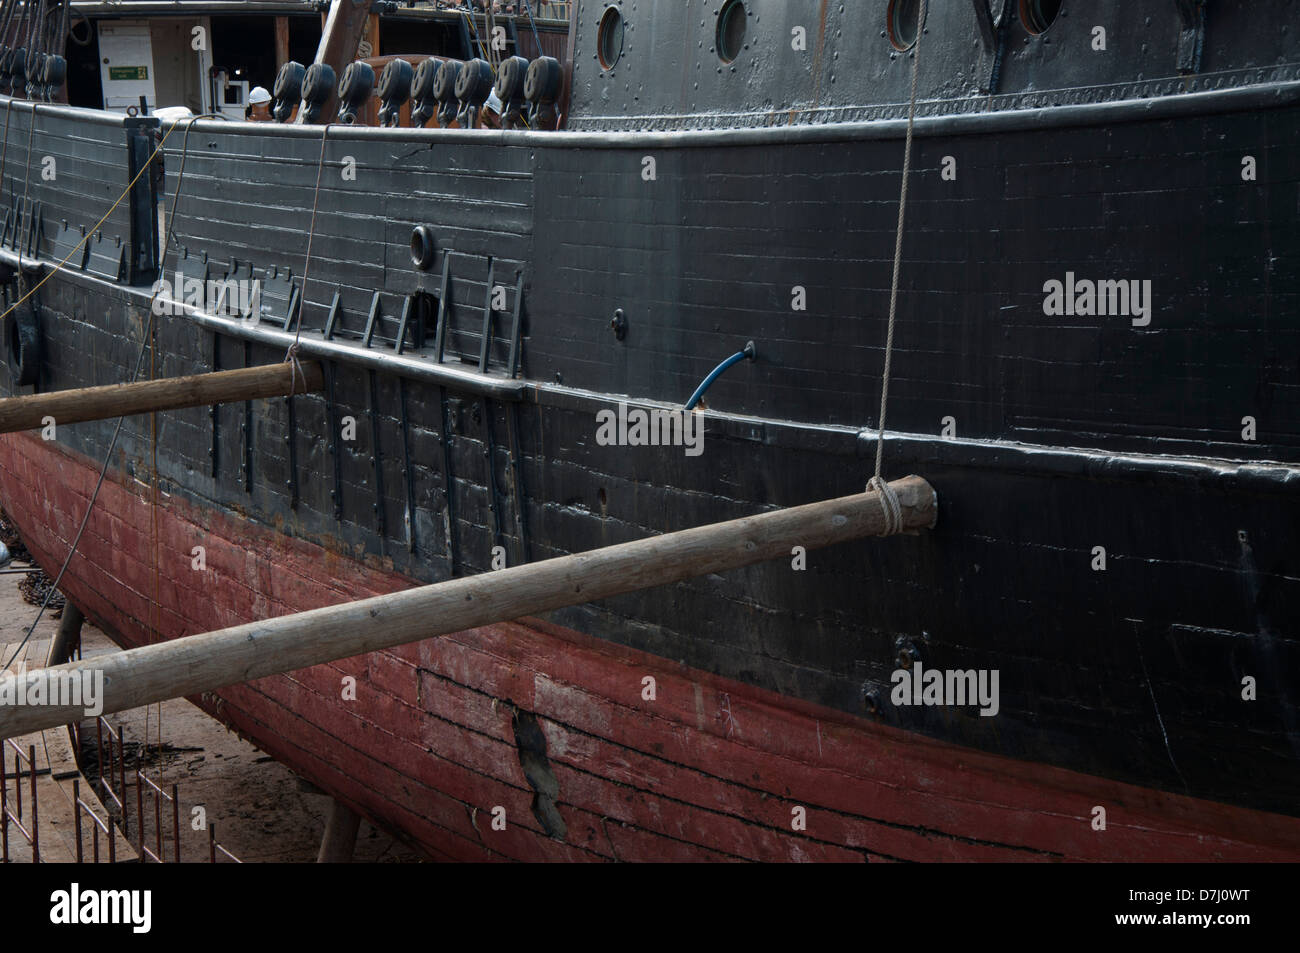 Tall Ship, coque en bois, cale sèche, les réparations, les renouvellements, les travaux en cours Banque D'Images